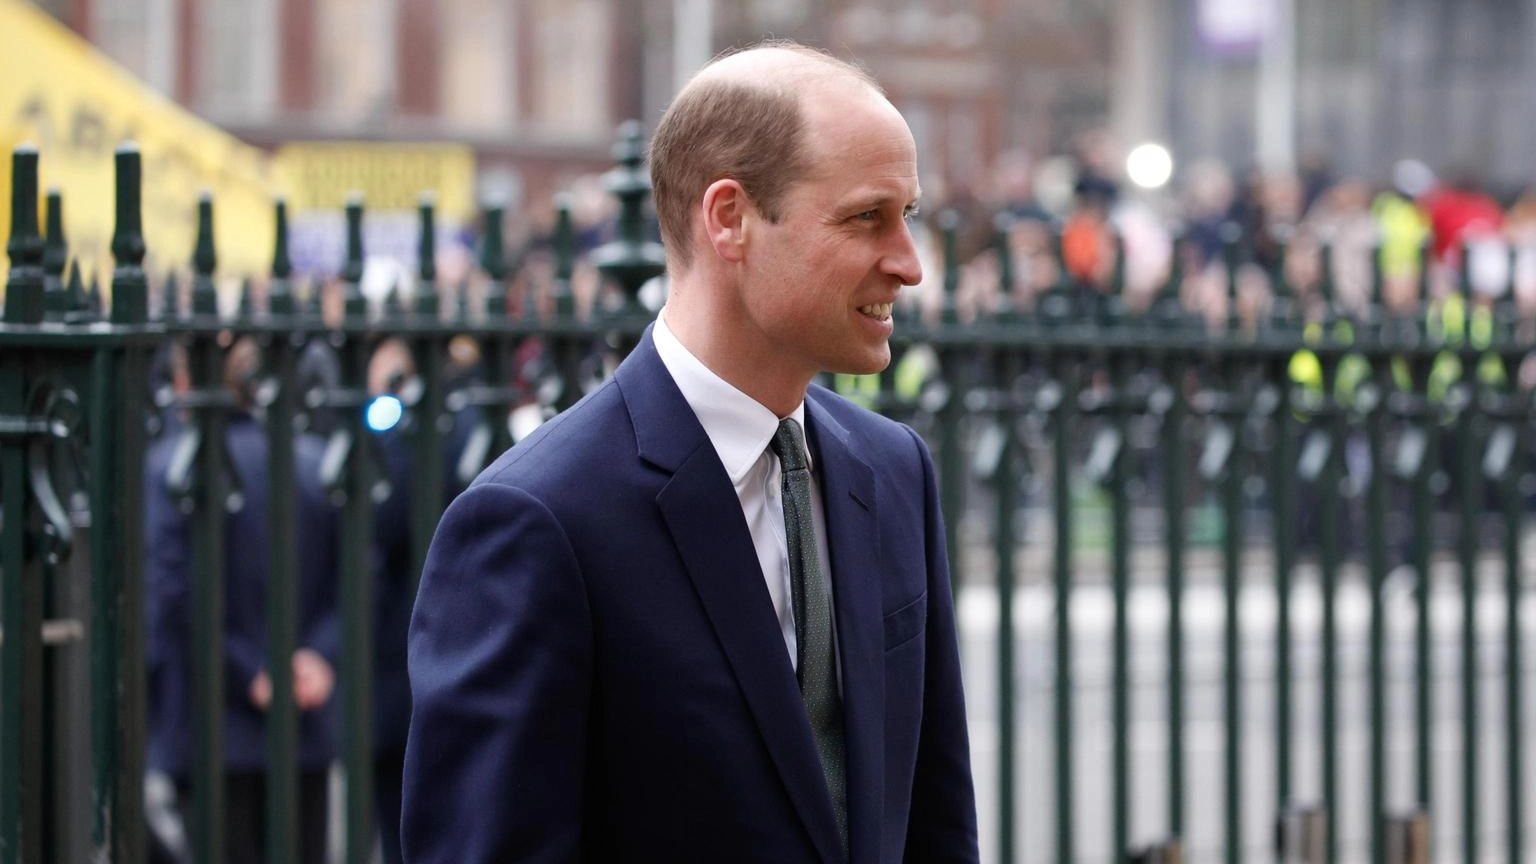 William riprende gli impegni pubblici dopo l'annuncio di Kate